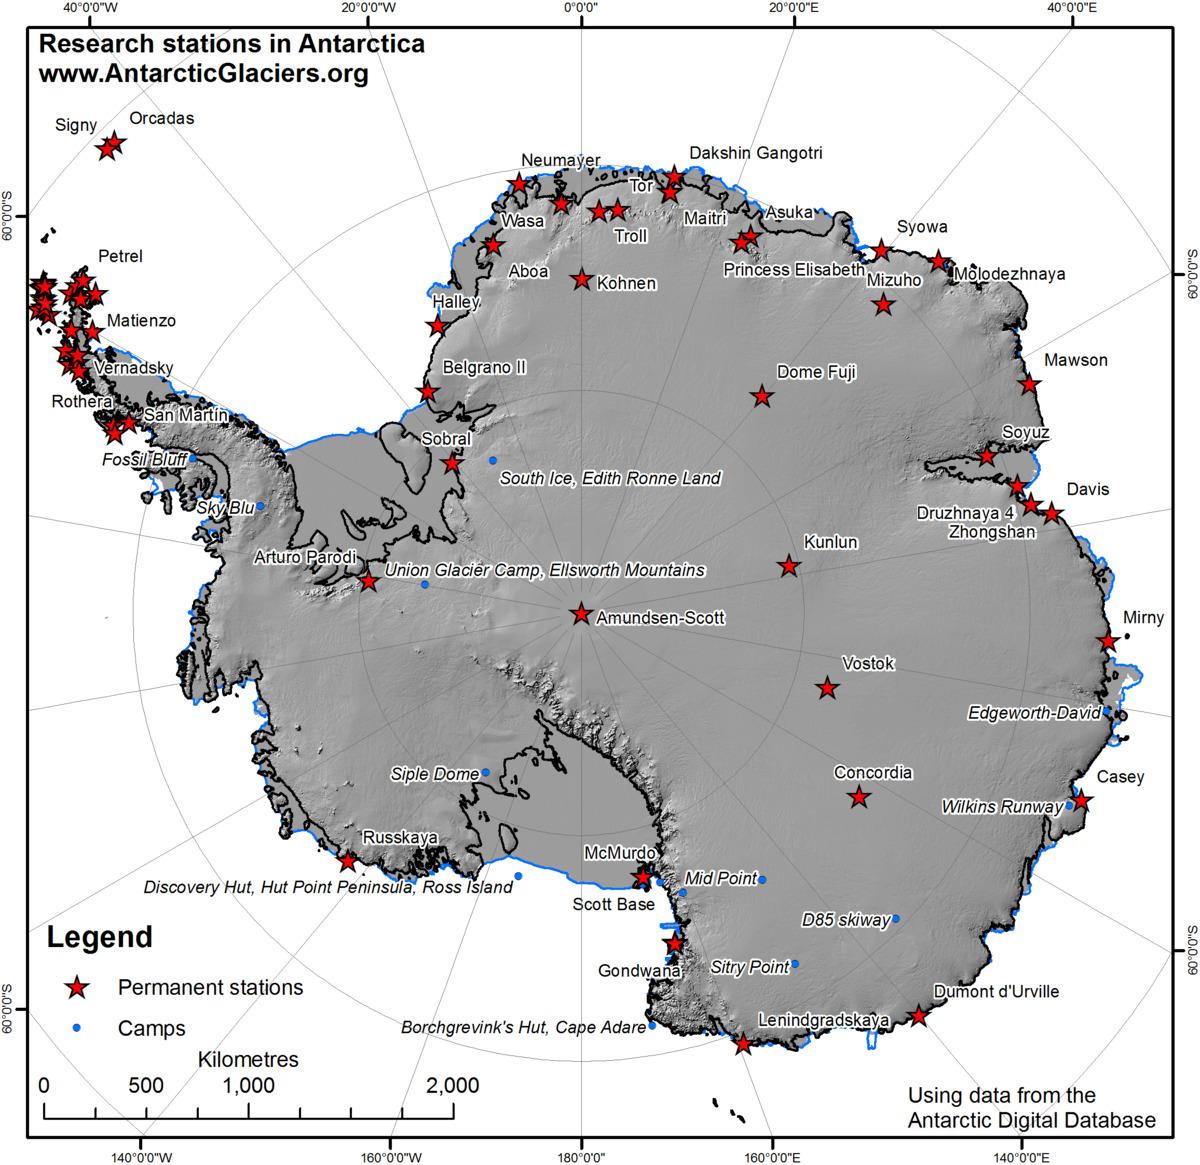 Kép: meglehetősen sok kutatóállomás működik az Antarktiszon